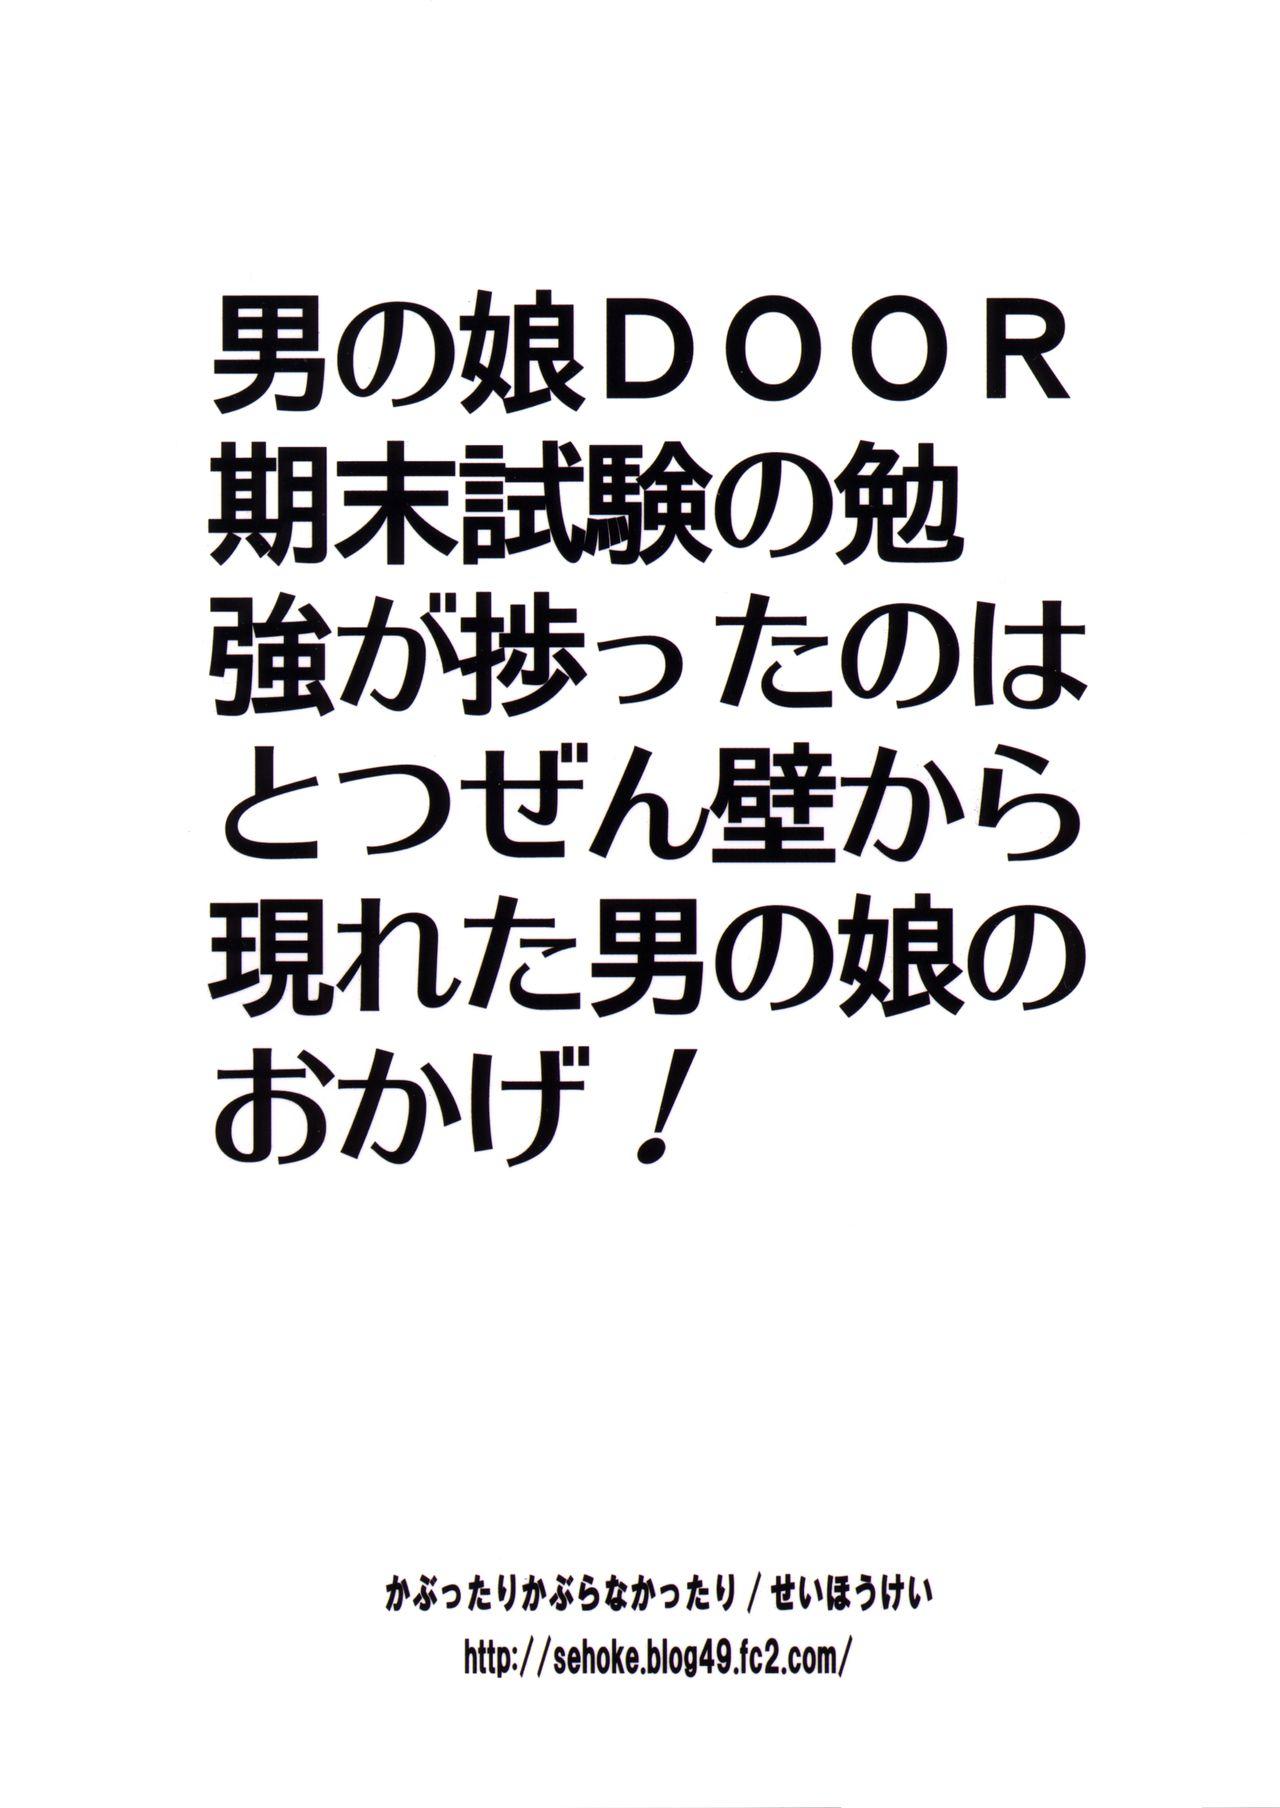 Otokonoko DOOR 25